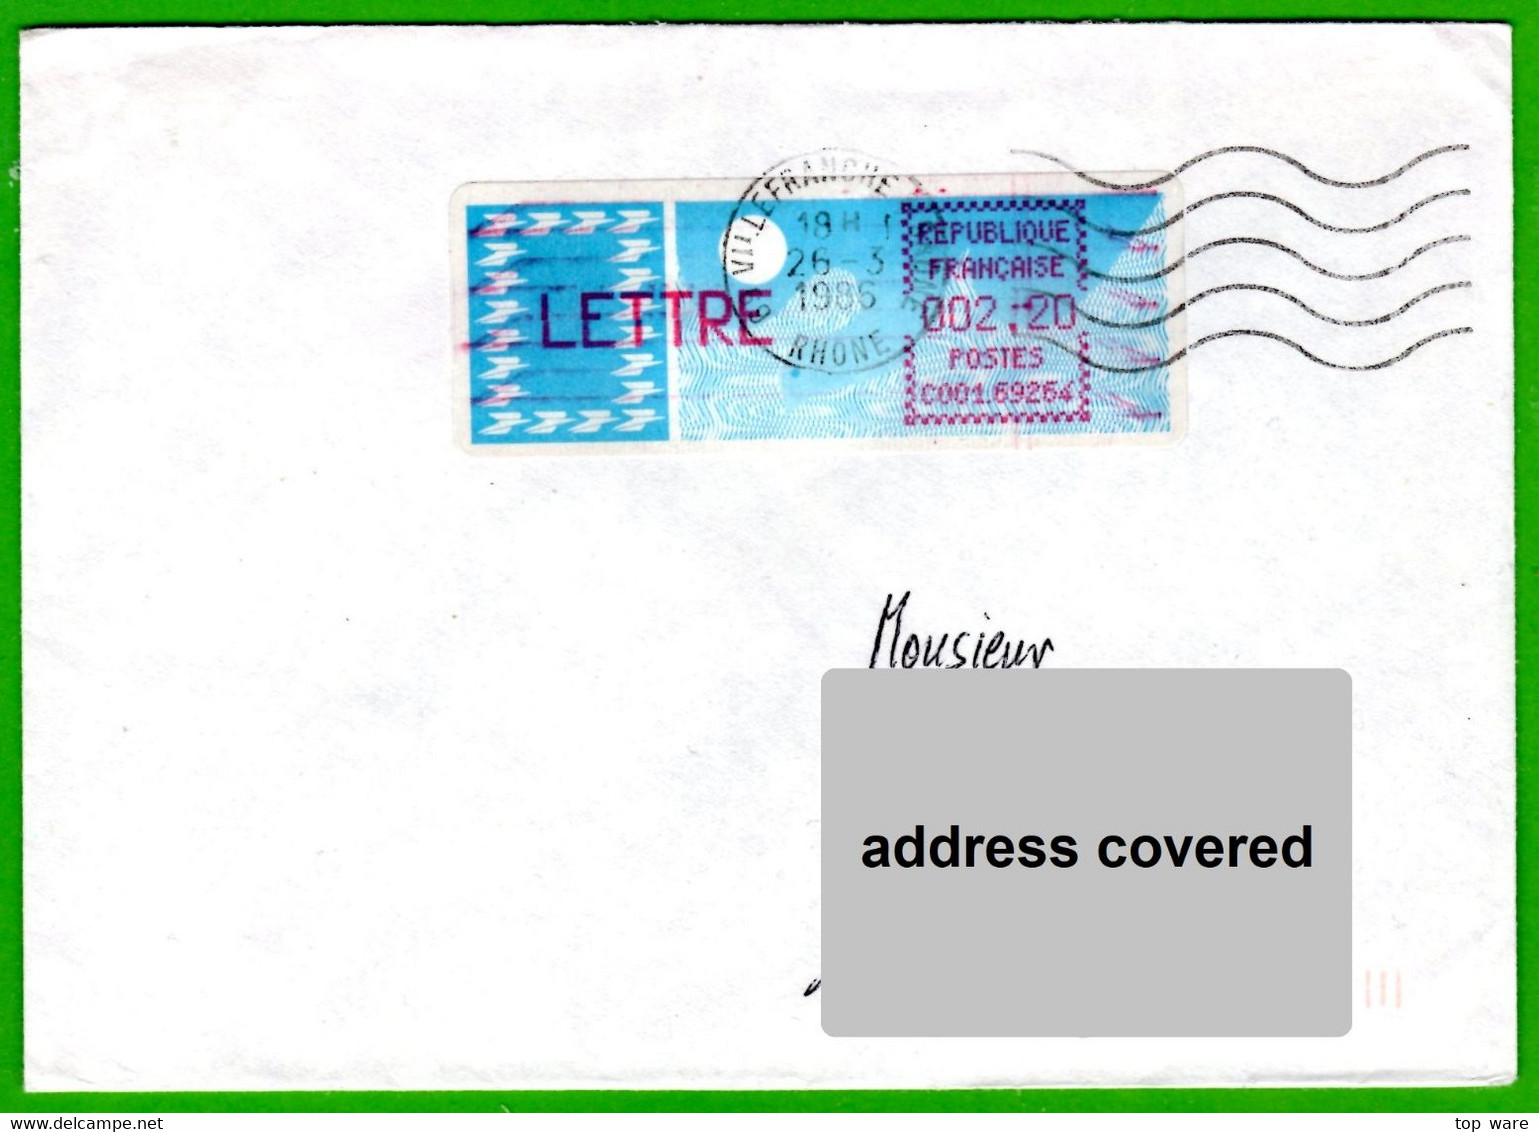 France LSA ATM Stamps C001.69264 / Michel 6.5 Zd / LETTRE 2,20 On Cover 26.3.86 Villefranche / Distributeurs - 1985 « Carrier » Papier